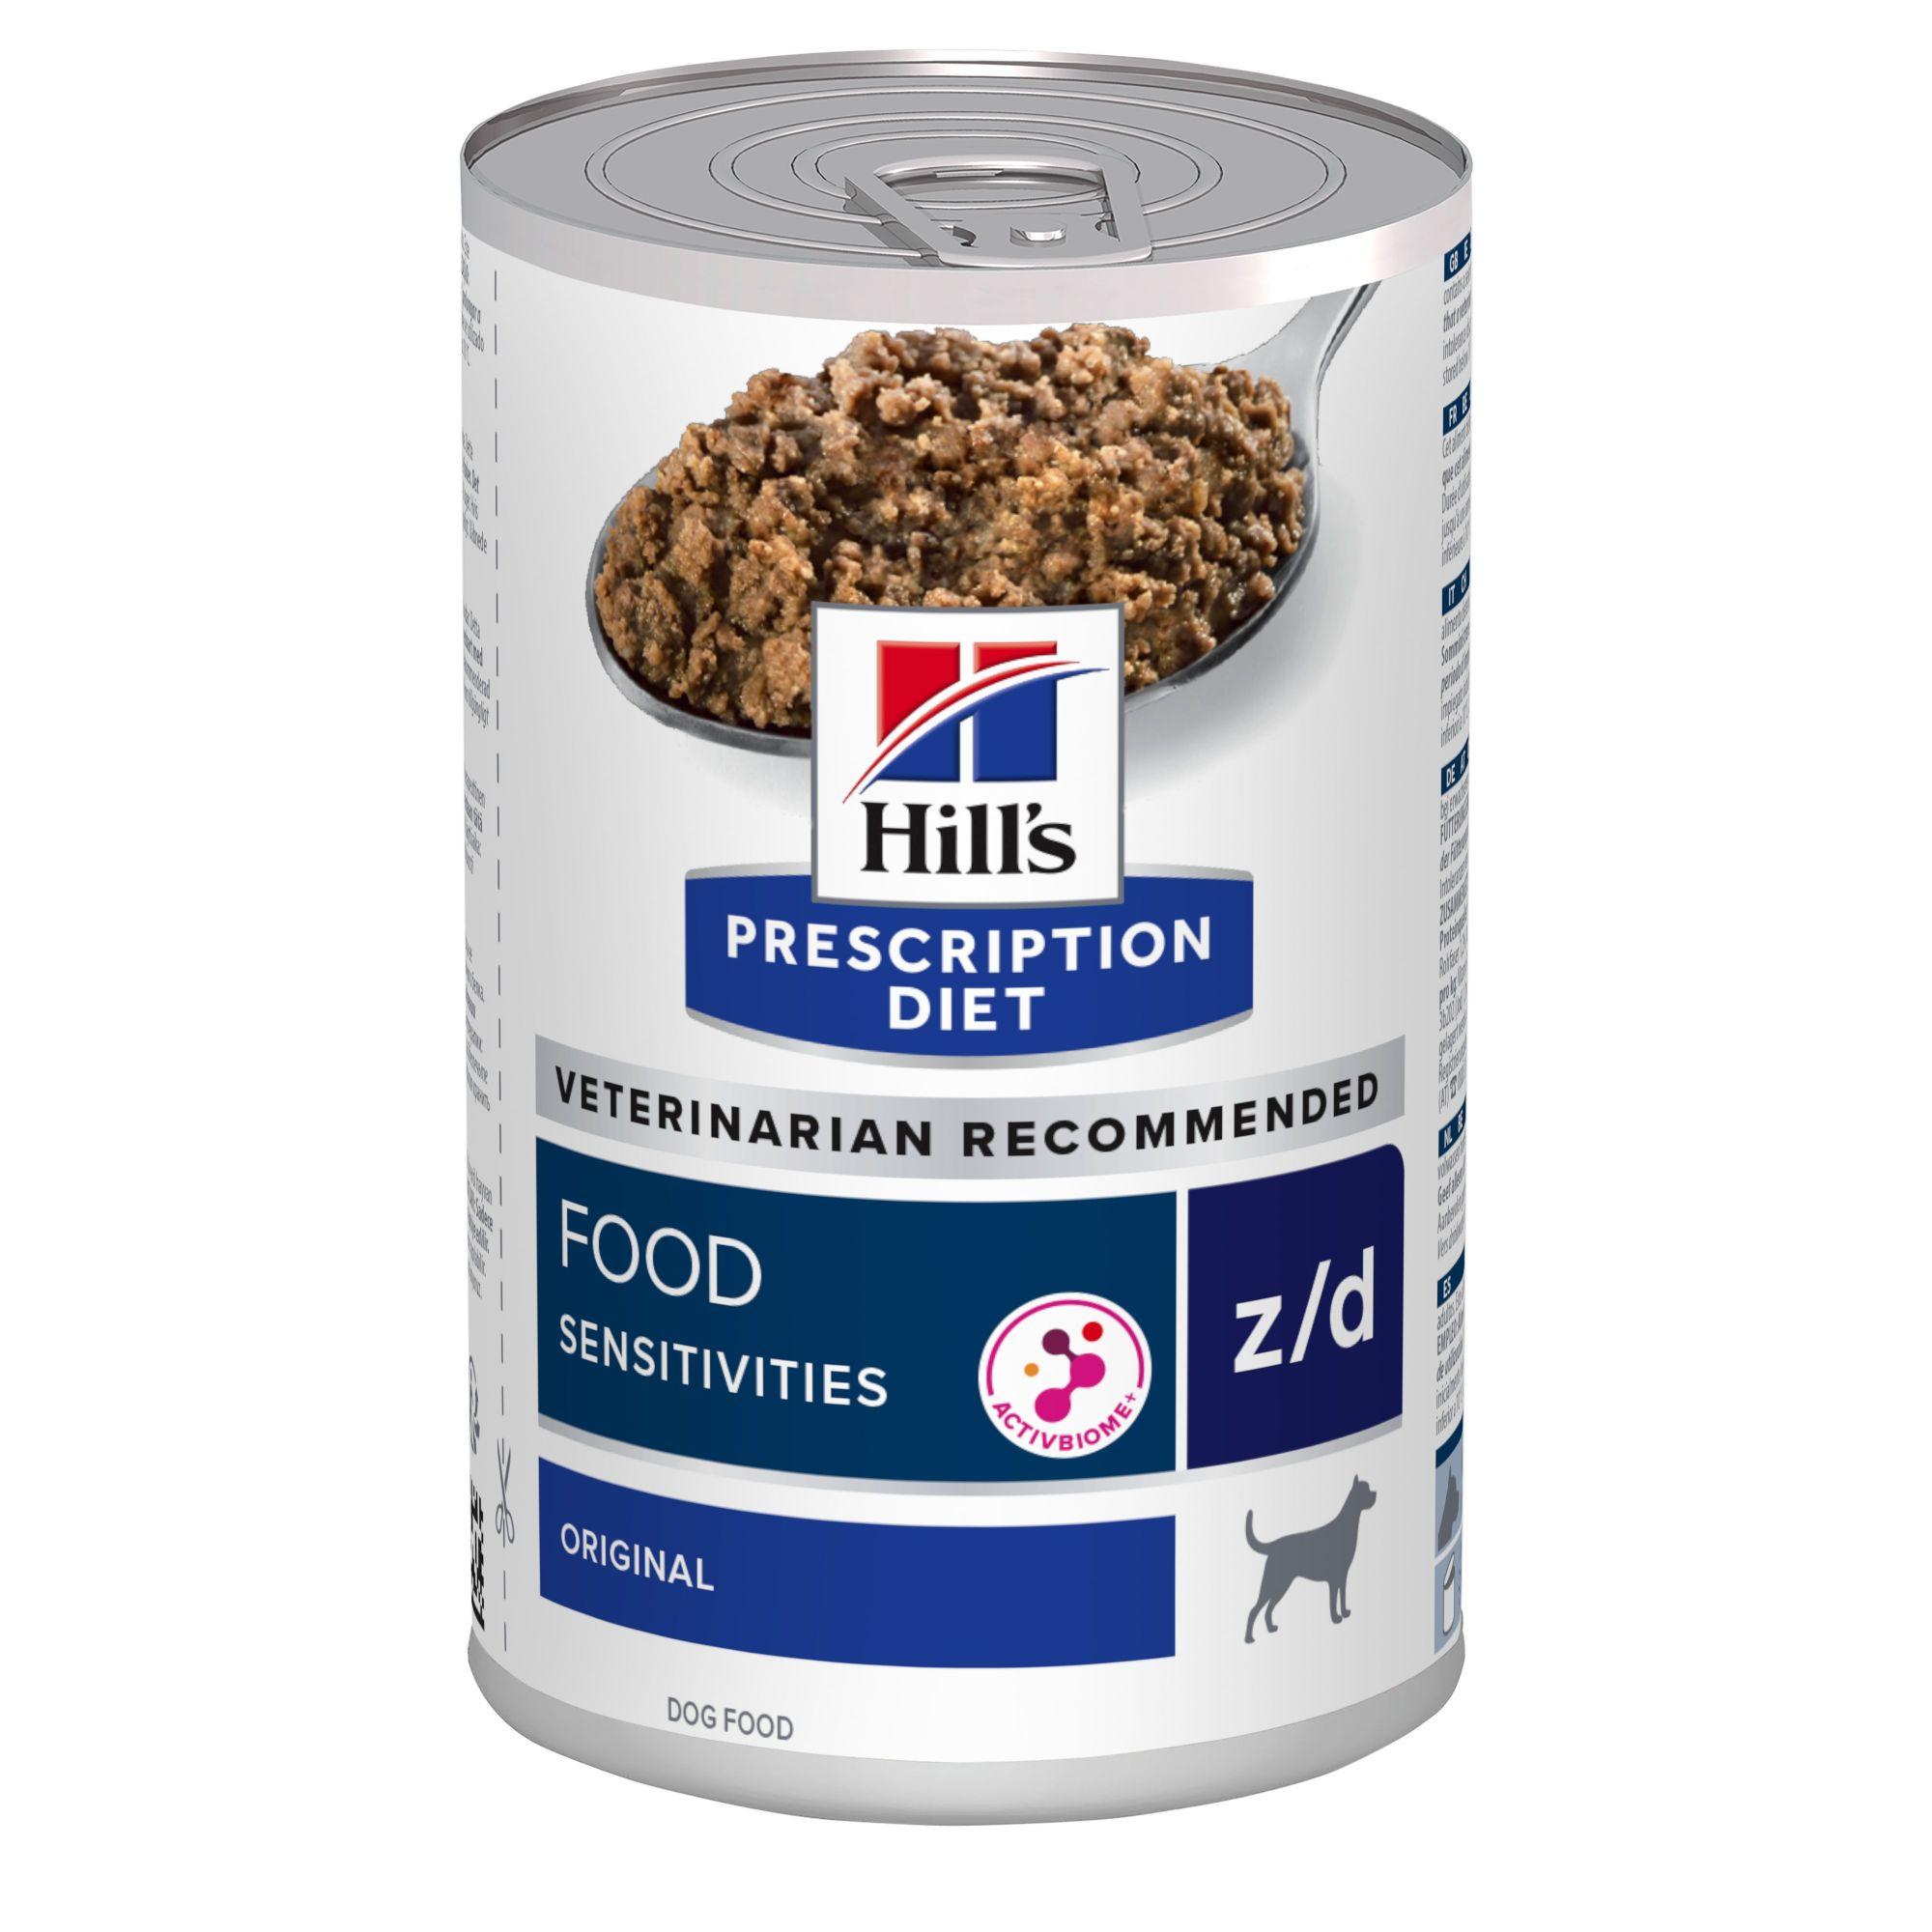 HILL'S Prescription Diet Food Sensitivies z/d Latas para perros